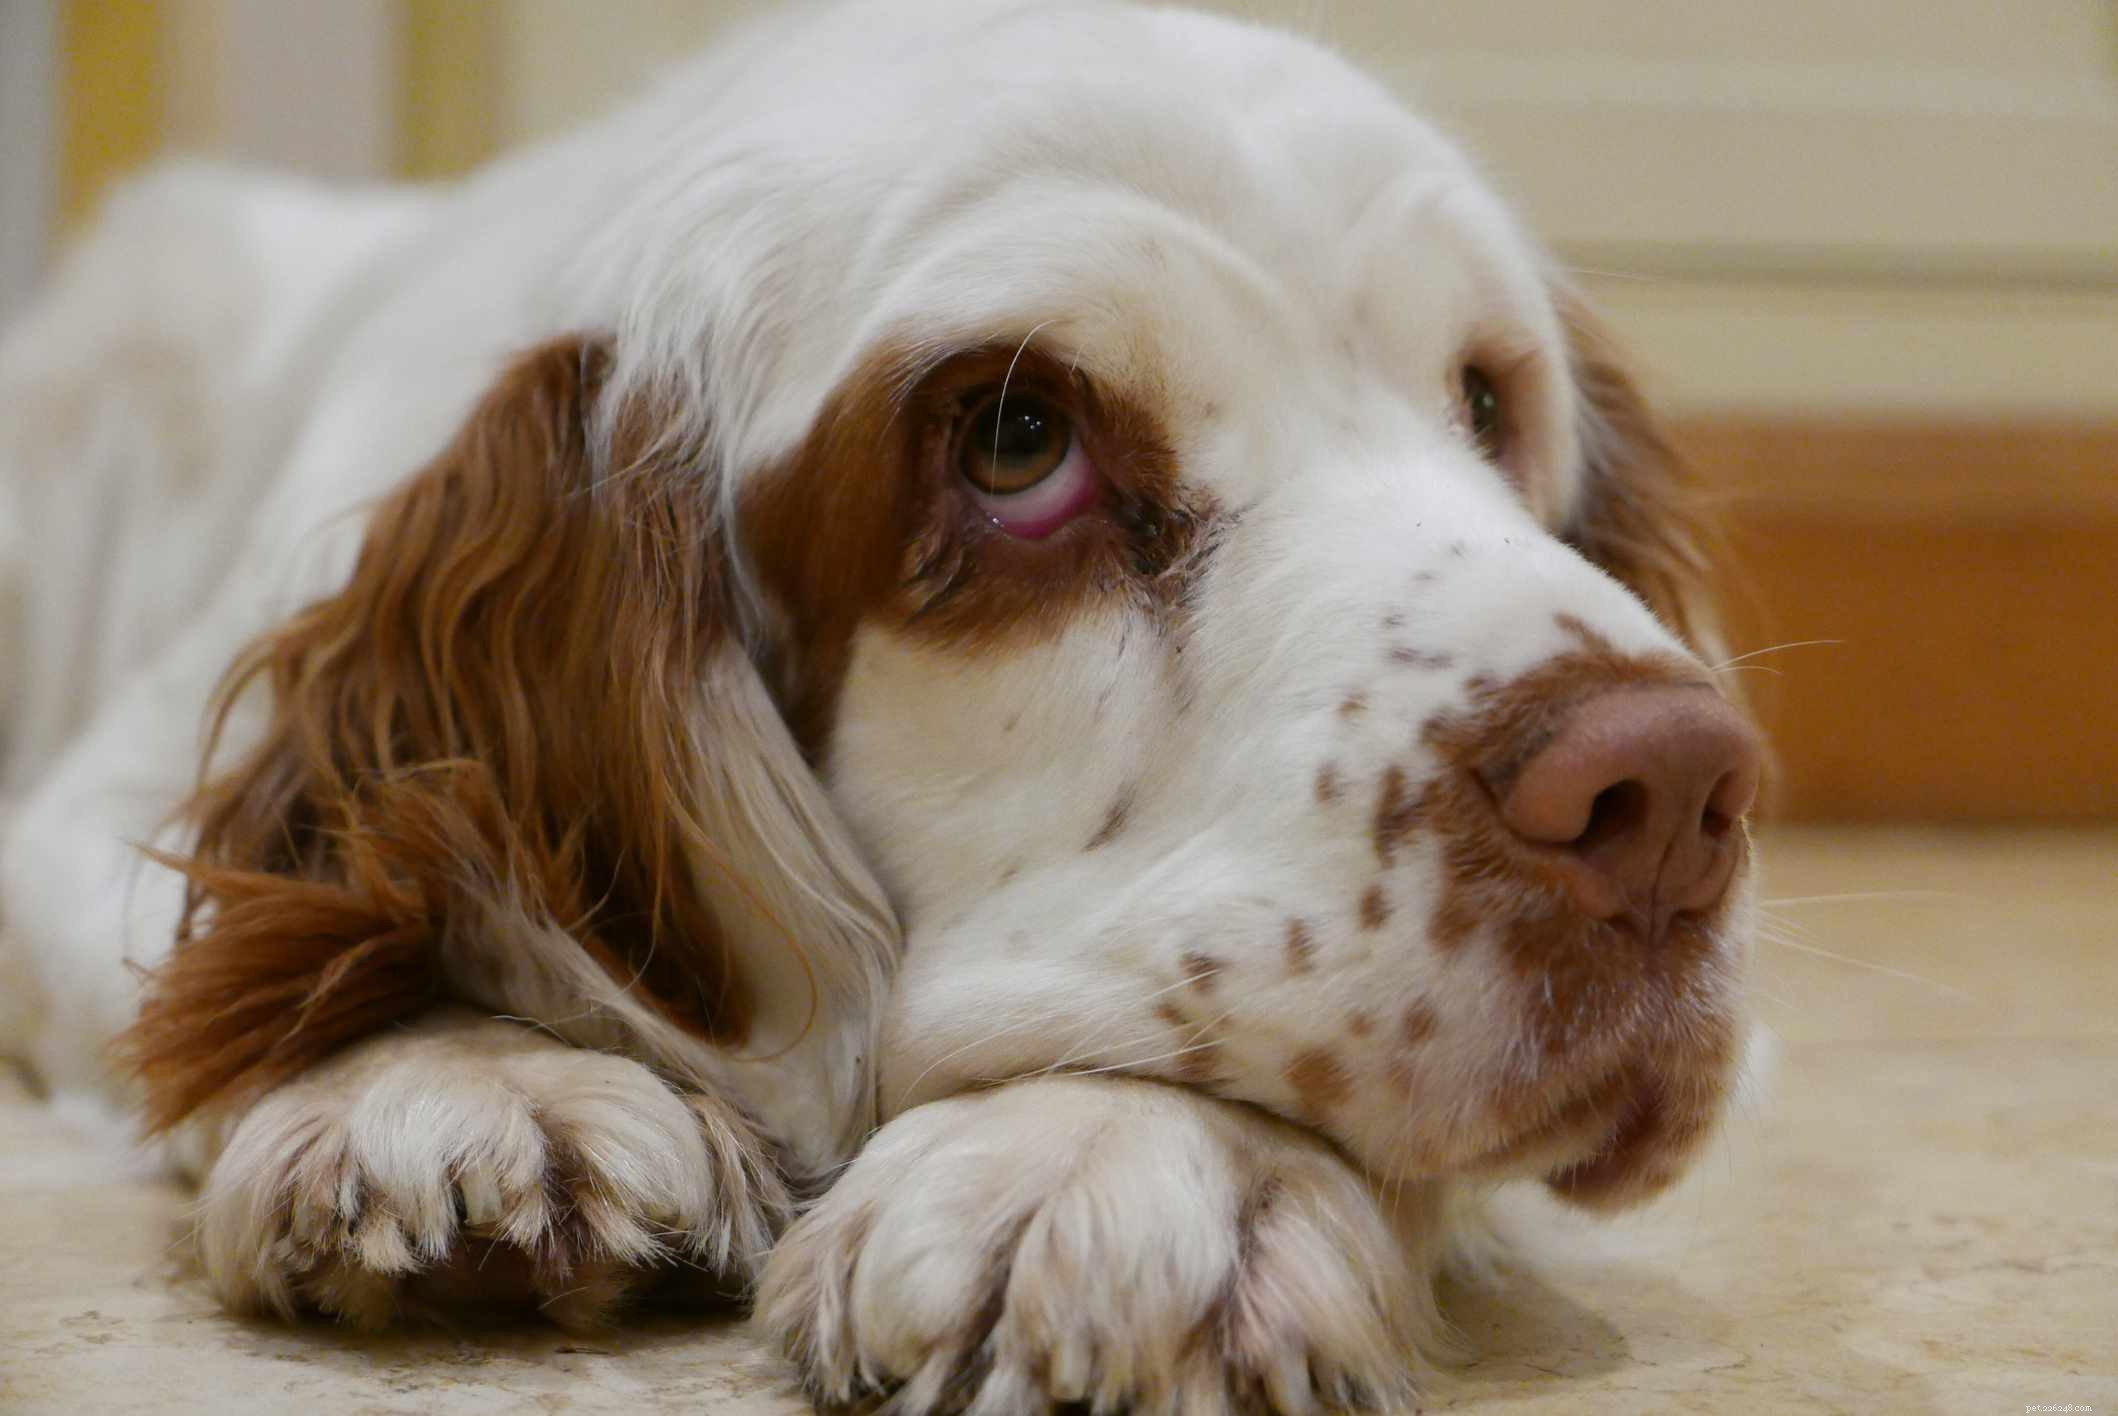 Кламбер-спаниель:Профиль породы собак